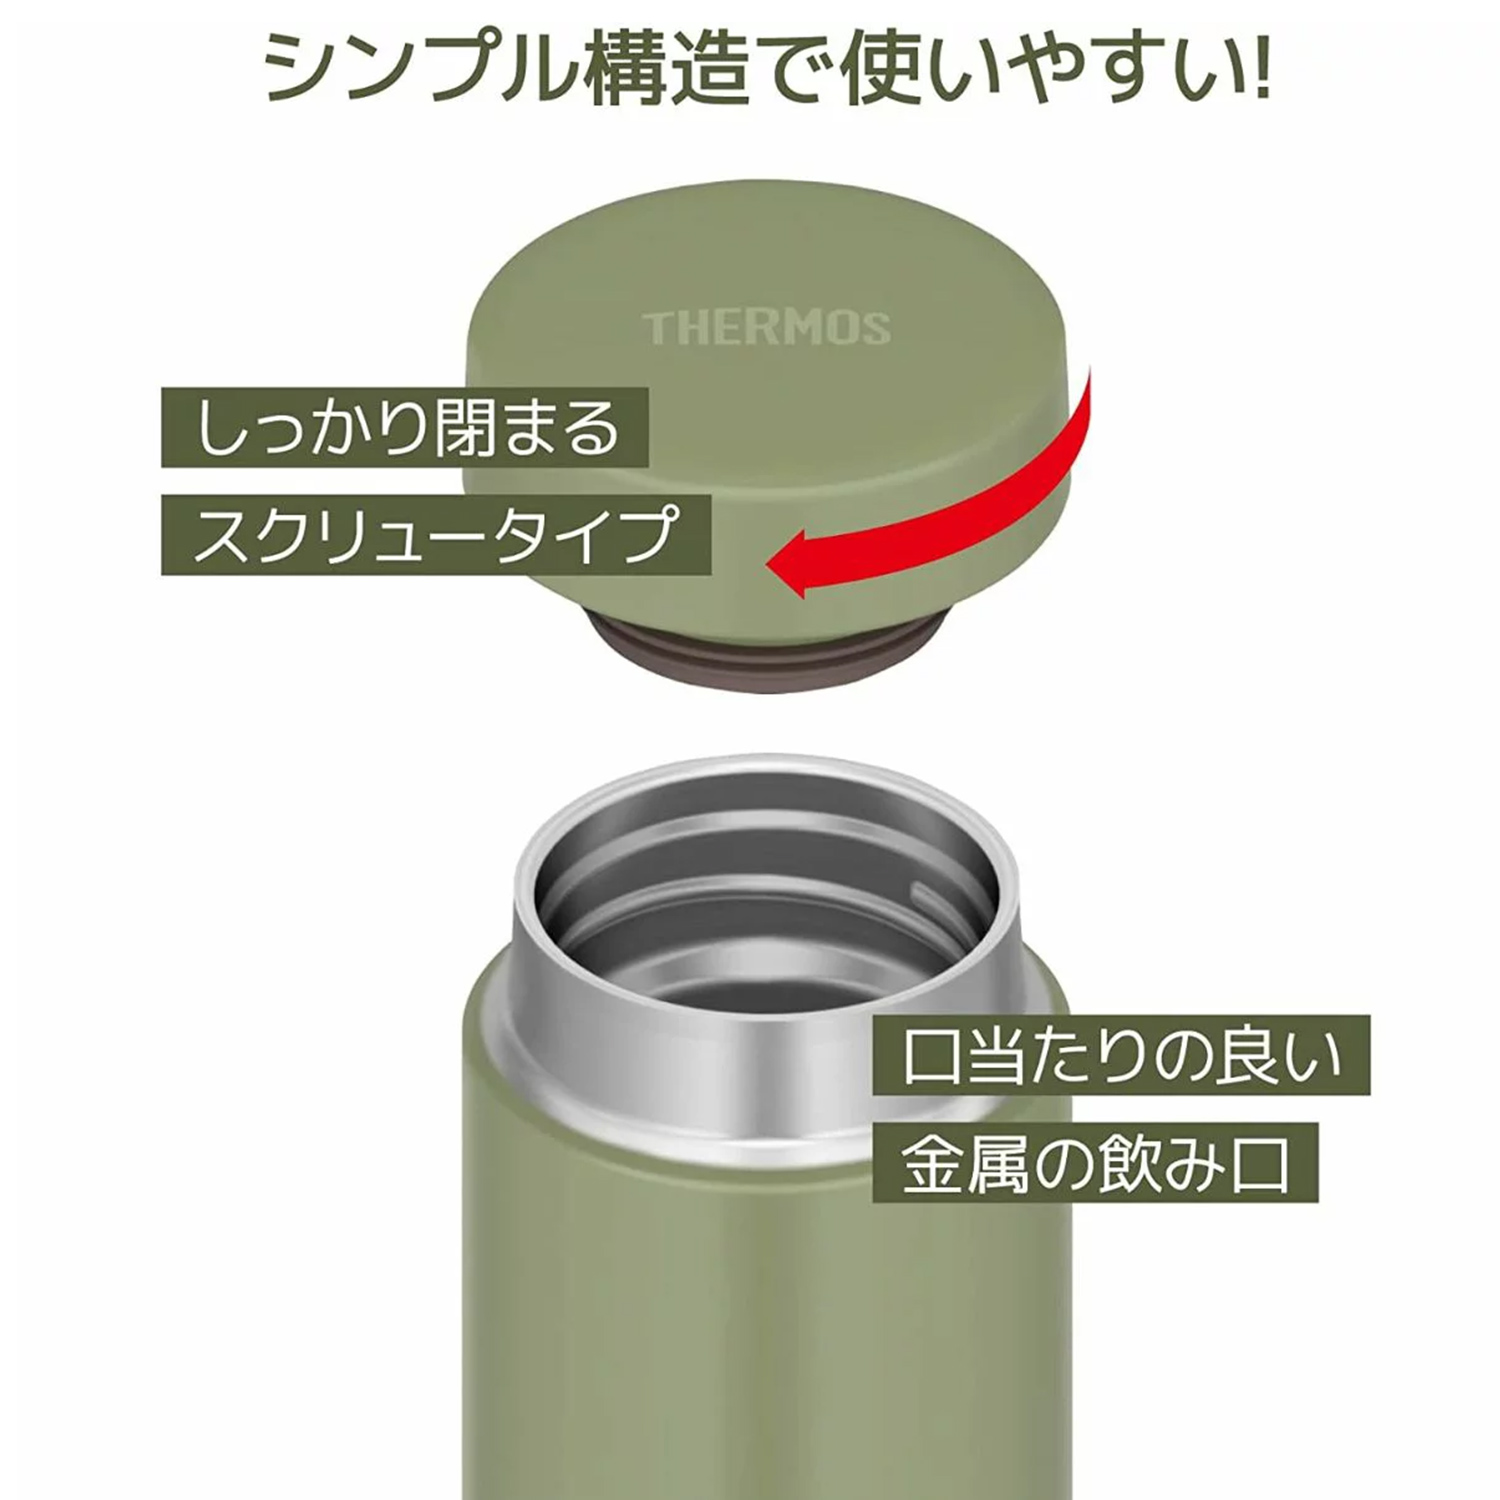 サーモス THERMOS 水筒 スクリュー栓  真空断熱ケータイマグ 0.6L